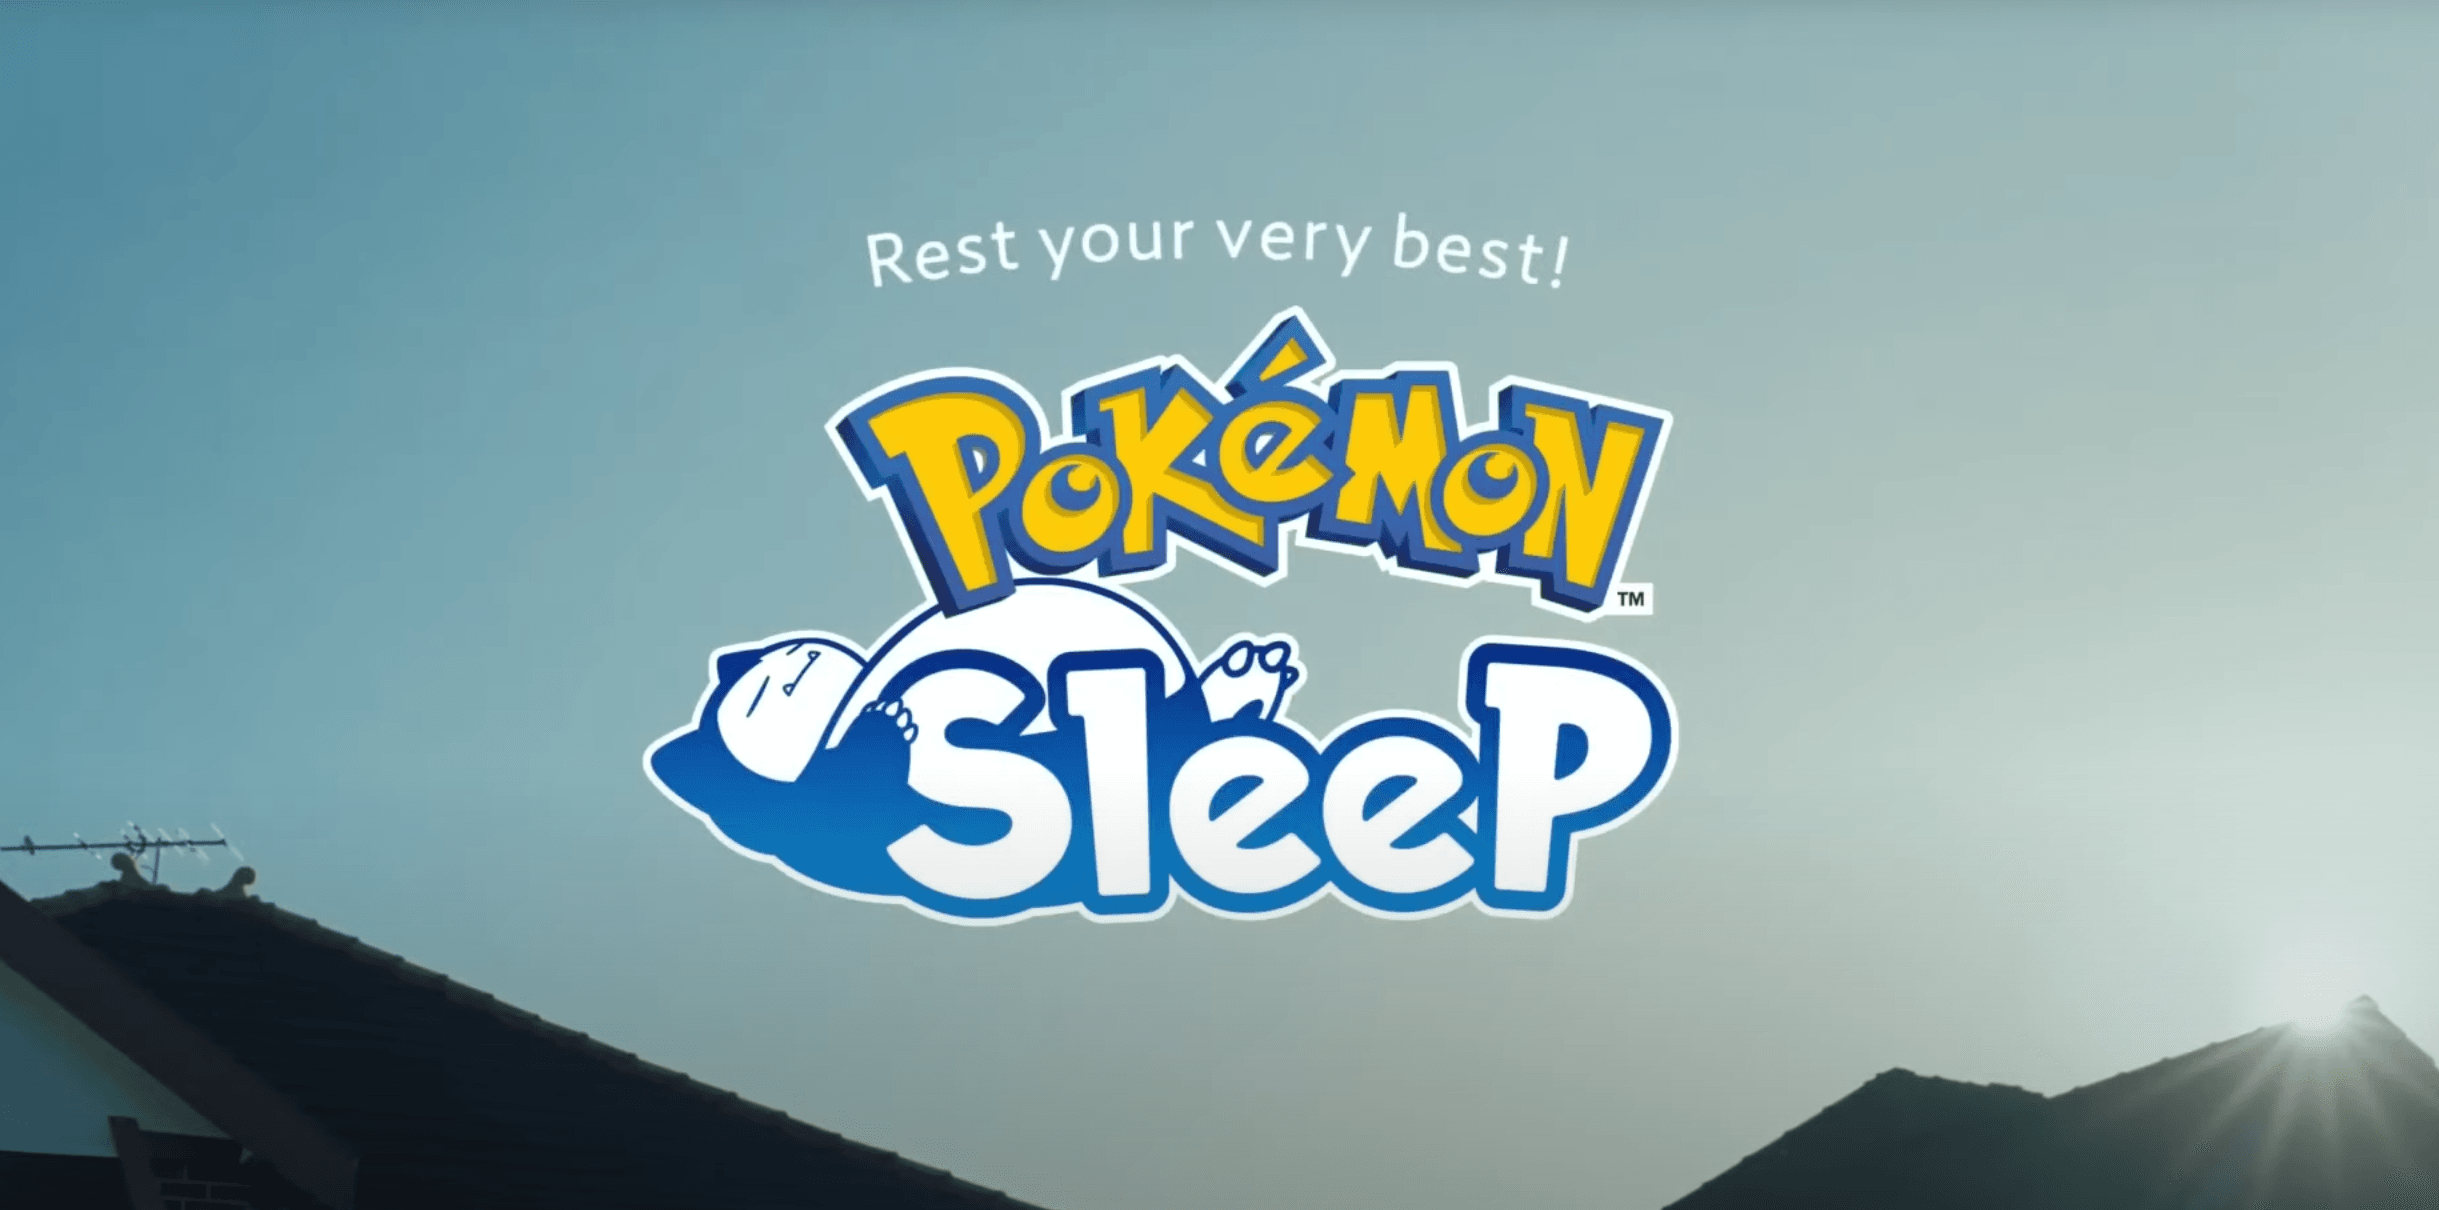 Pokémon Sleep logo in front of a mountain view